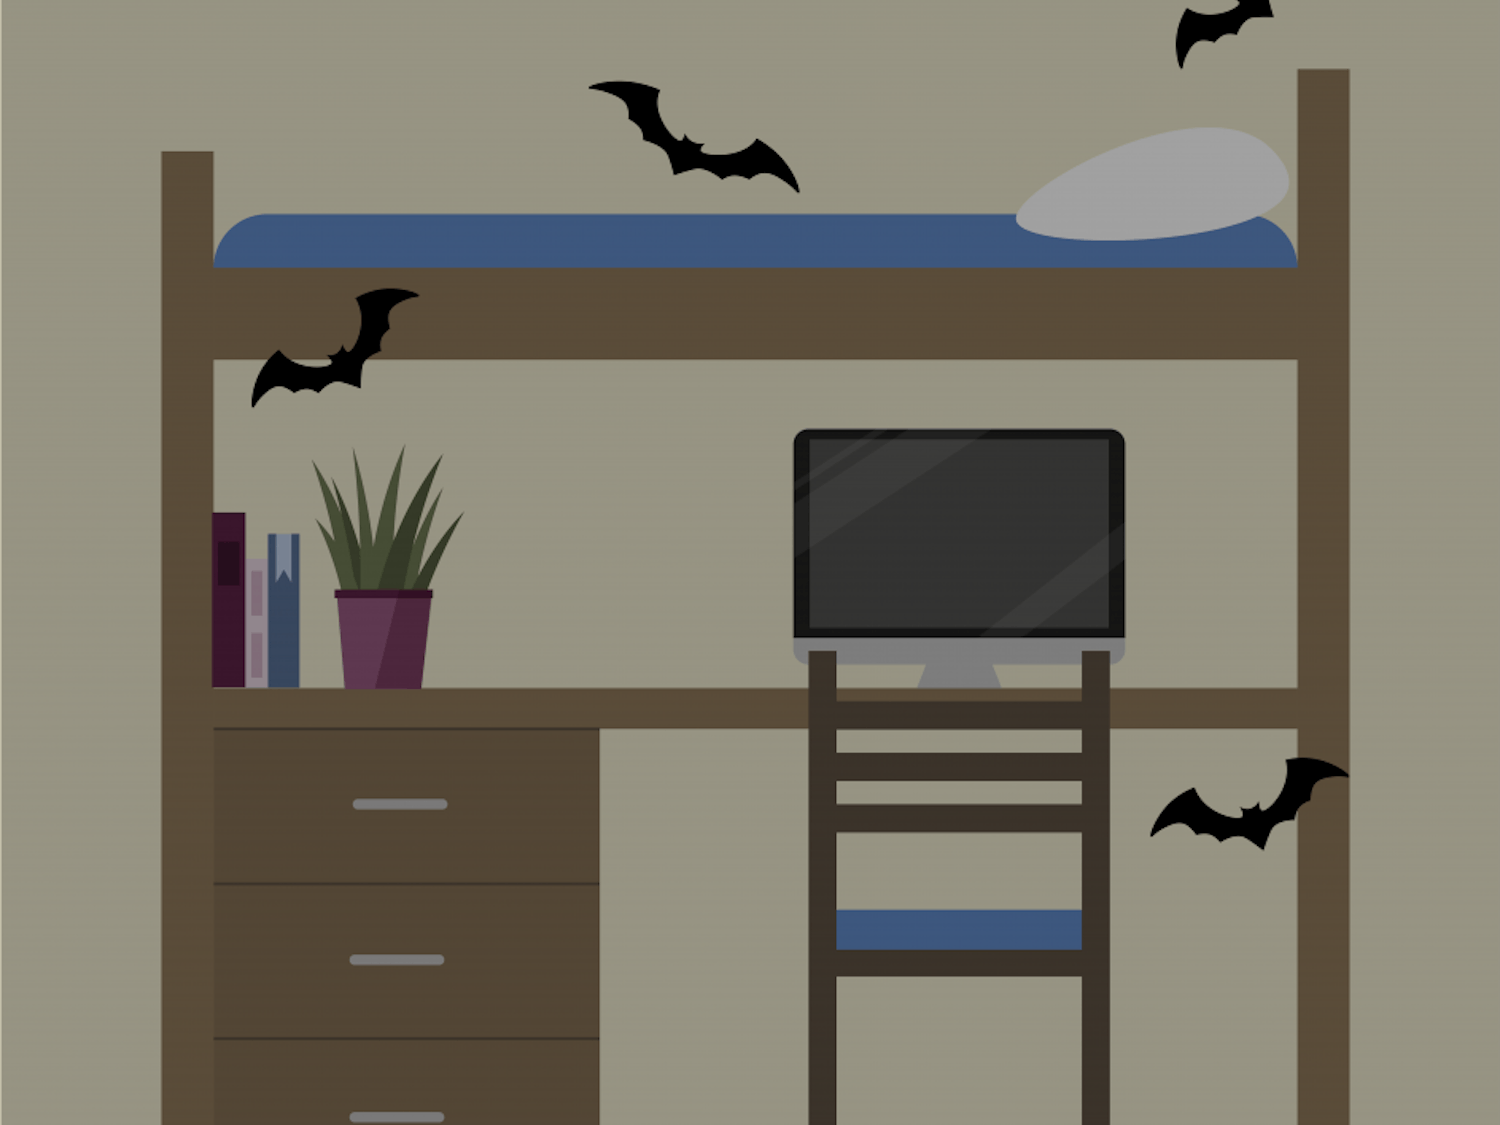 bats-in-dorms.png